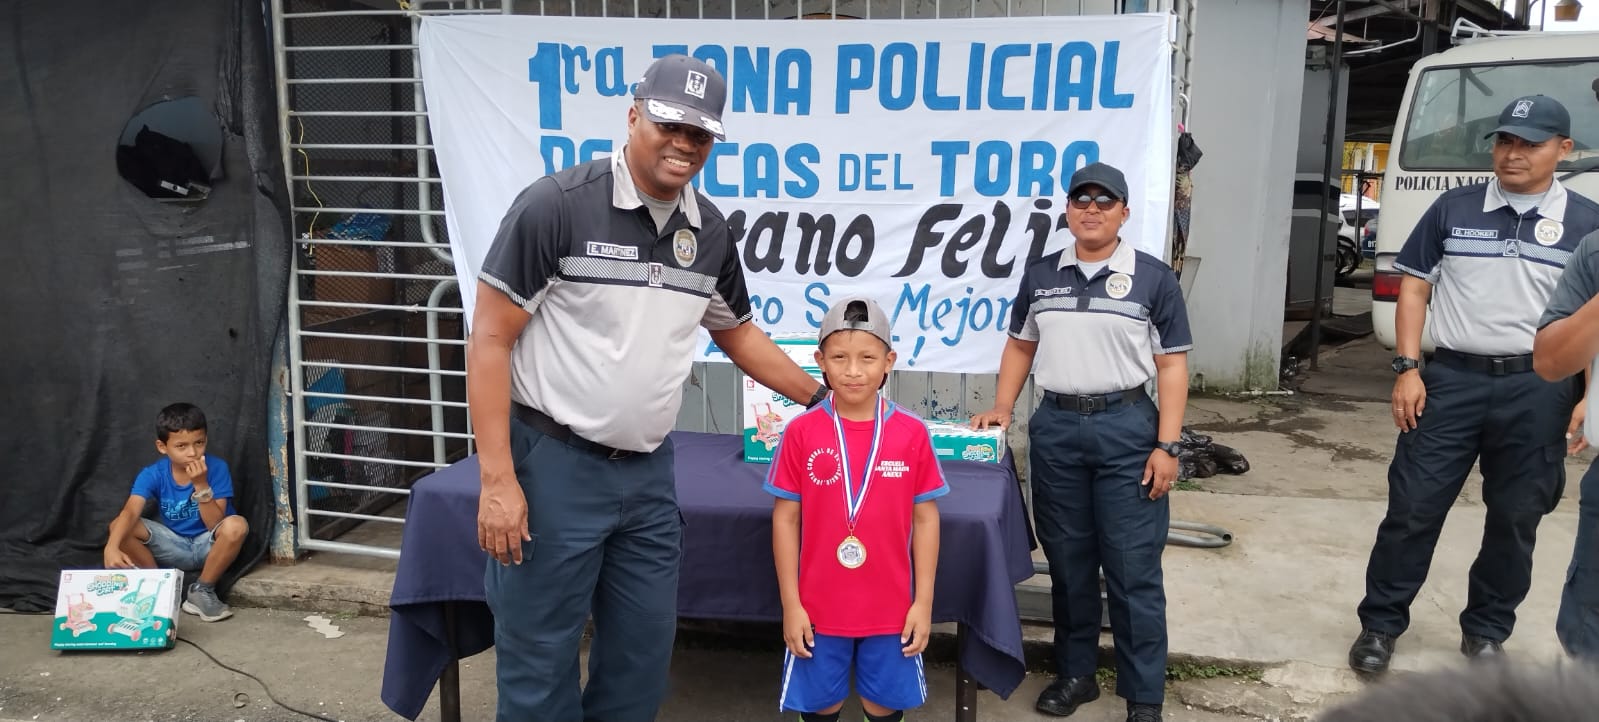 Policía de menores. Panama